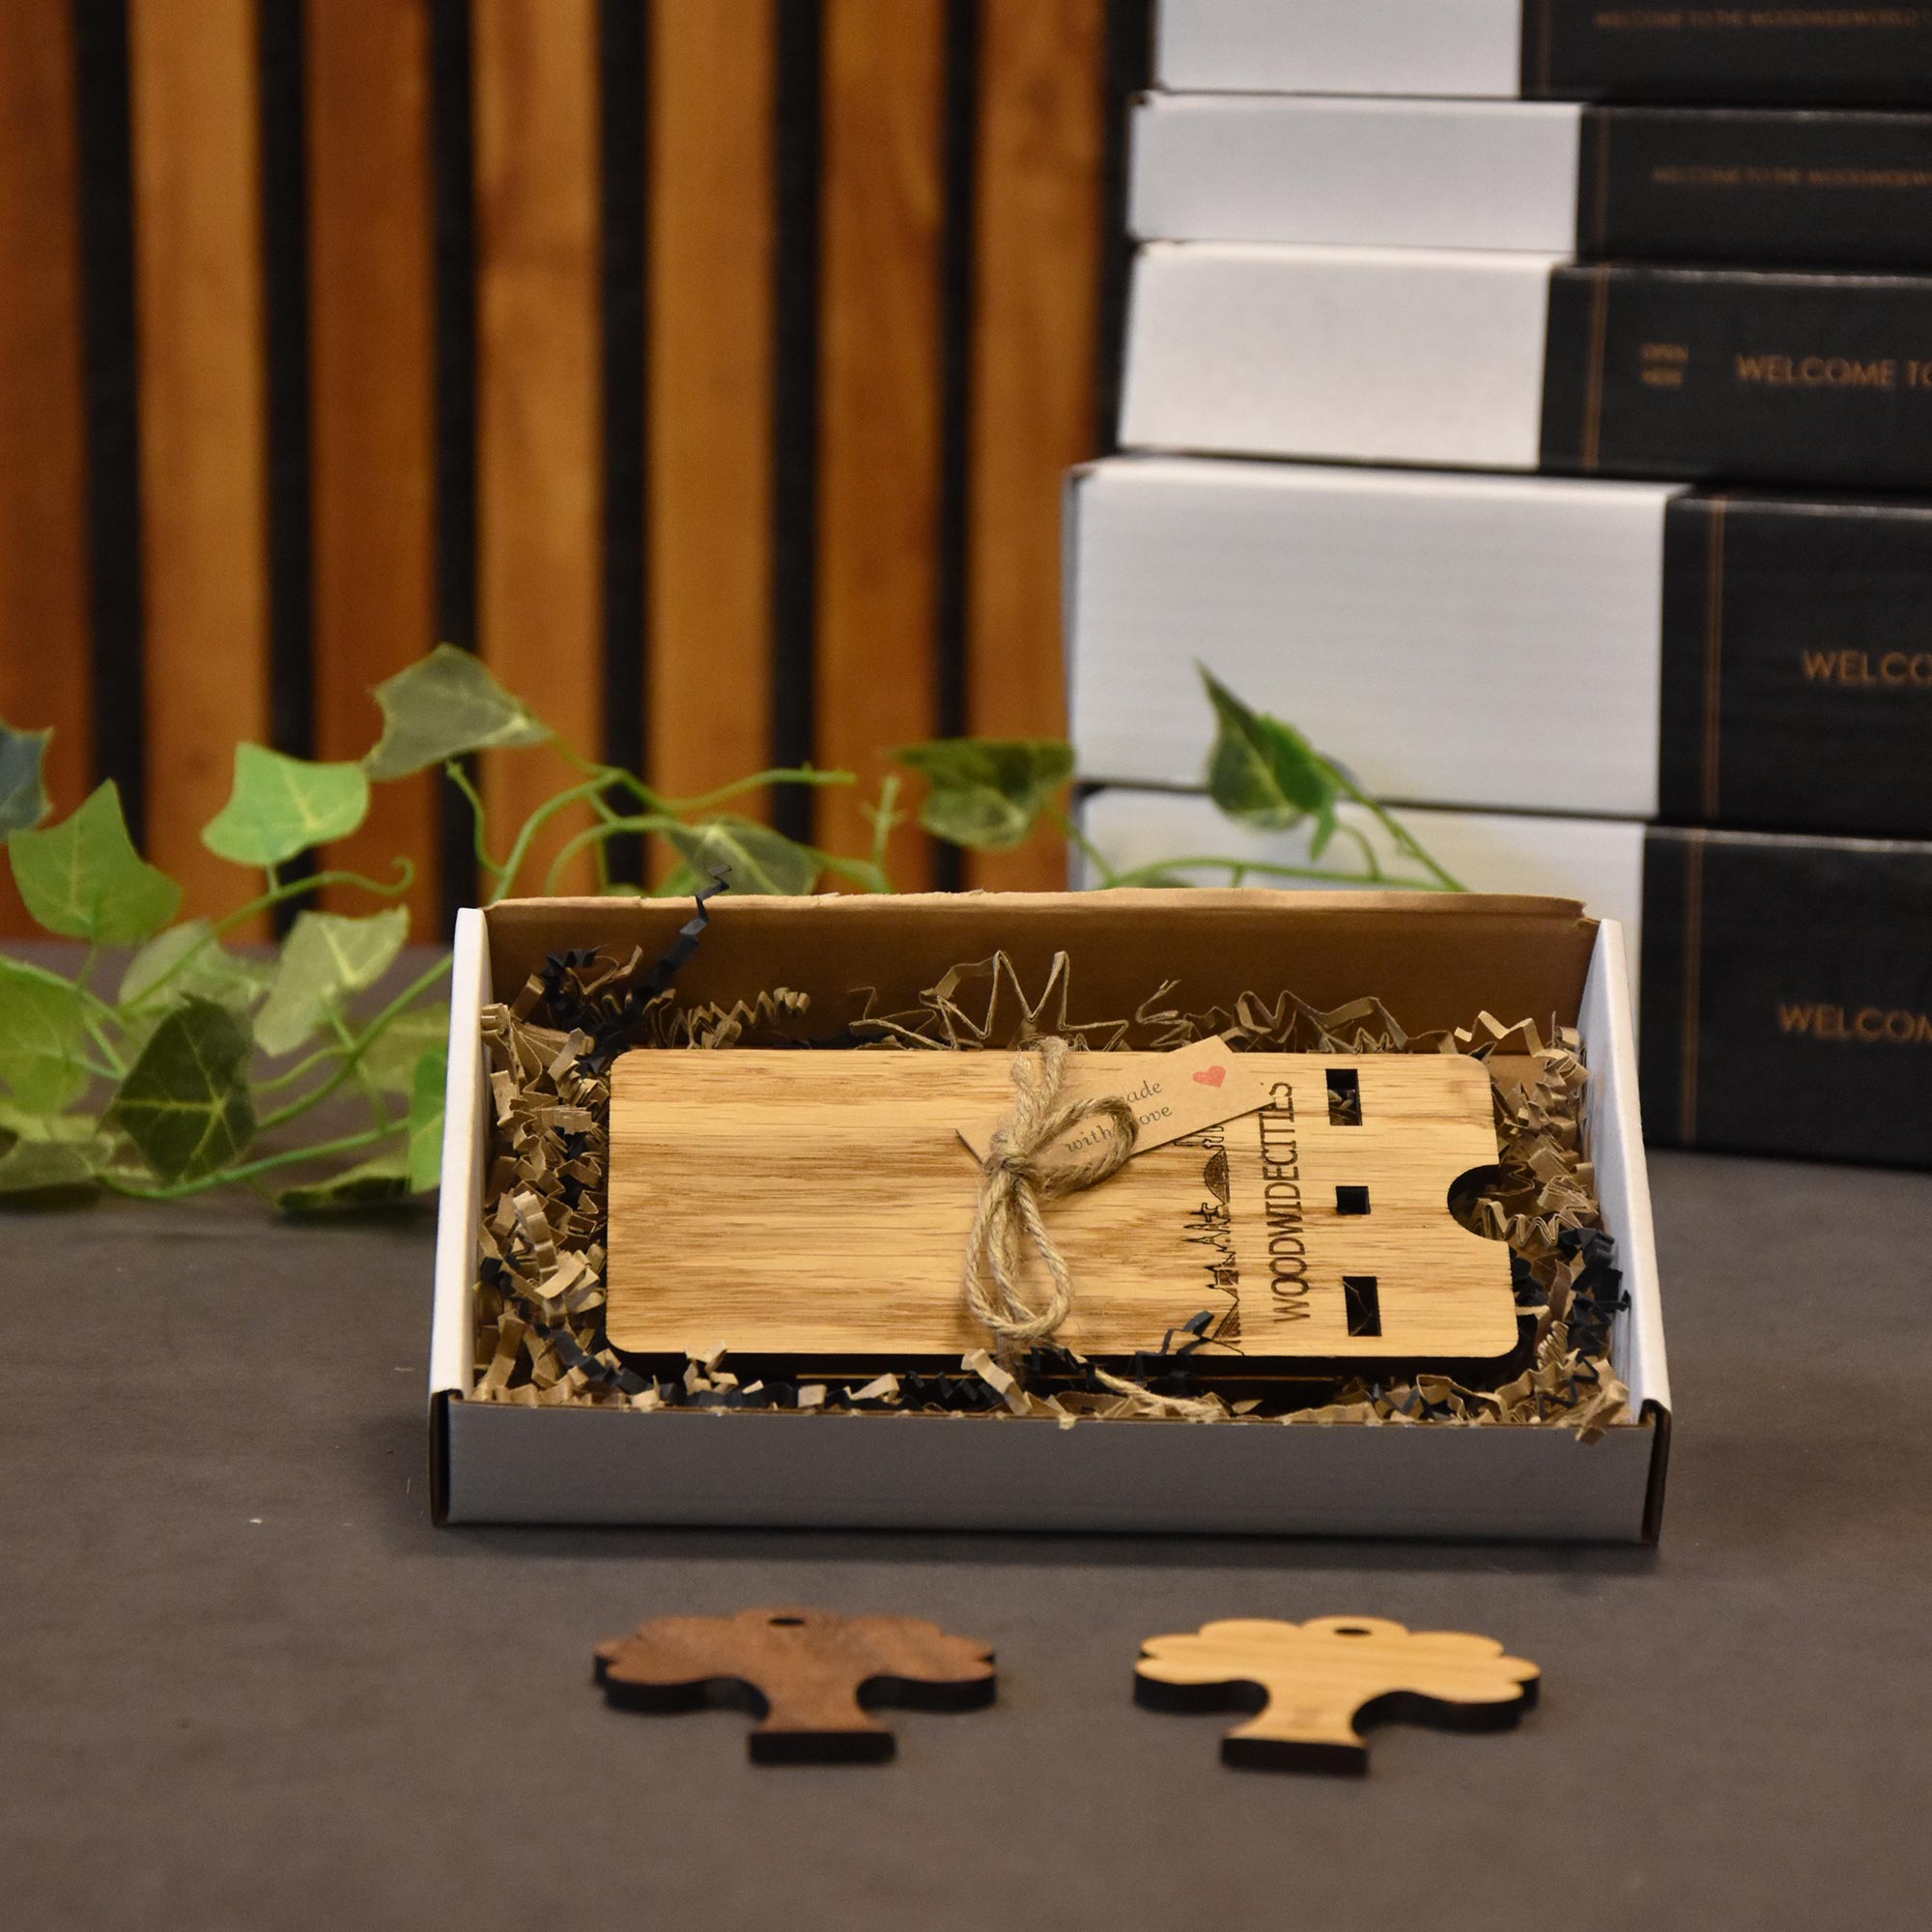 Skyline Telefoonhouder Rhenen houten cadeau decoratie relatiegeschenk van WoodWideCities